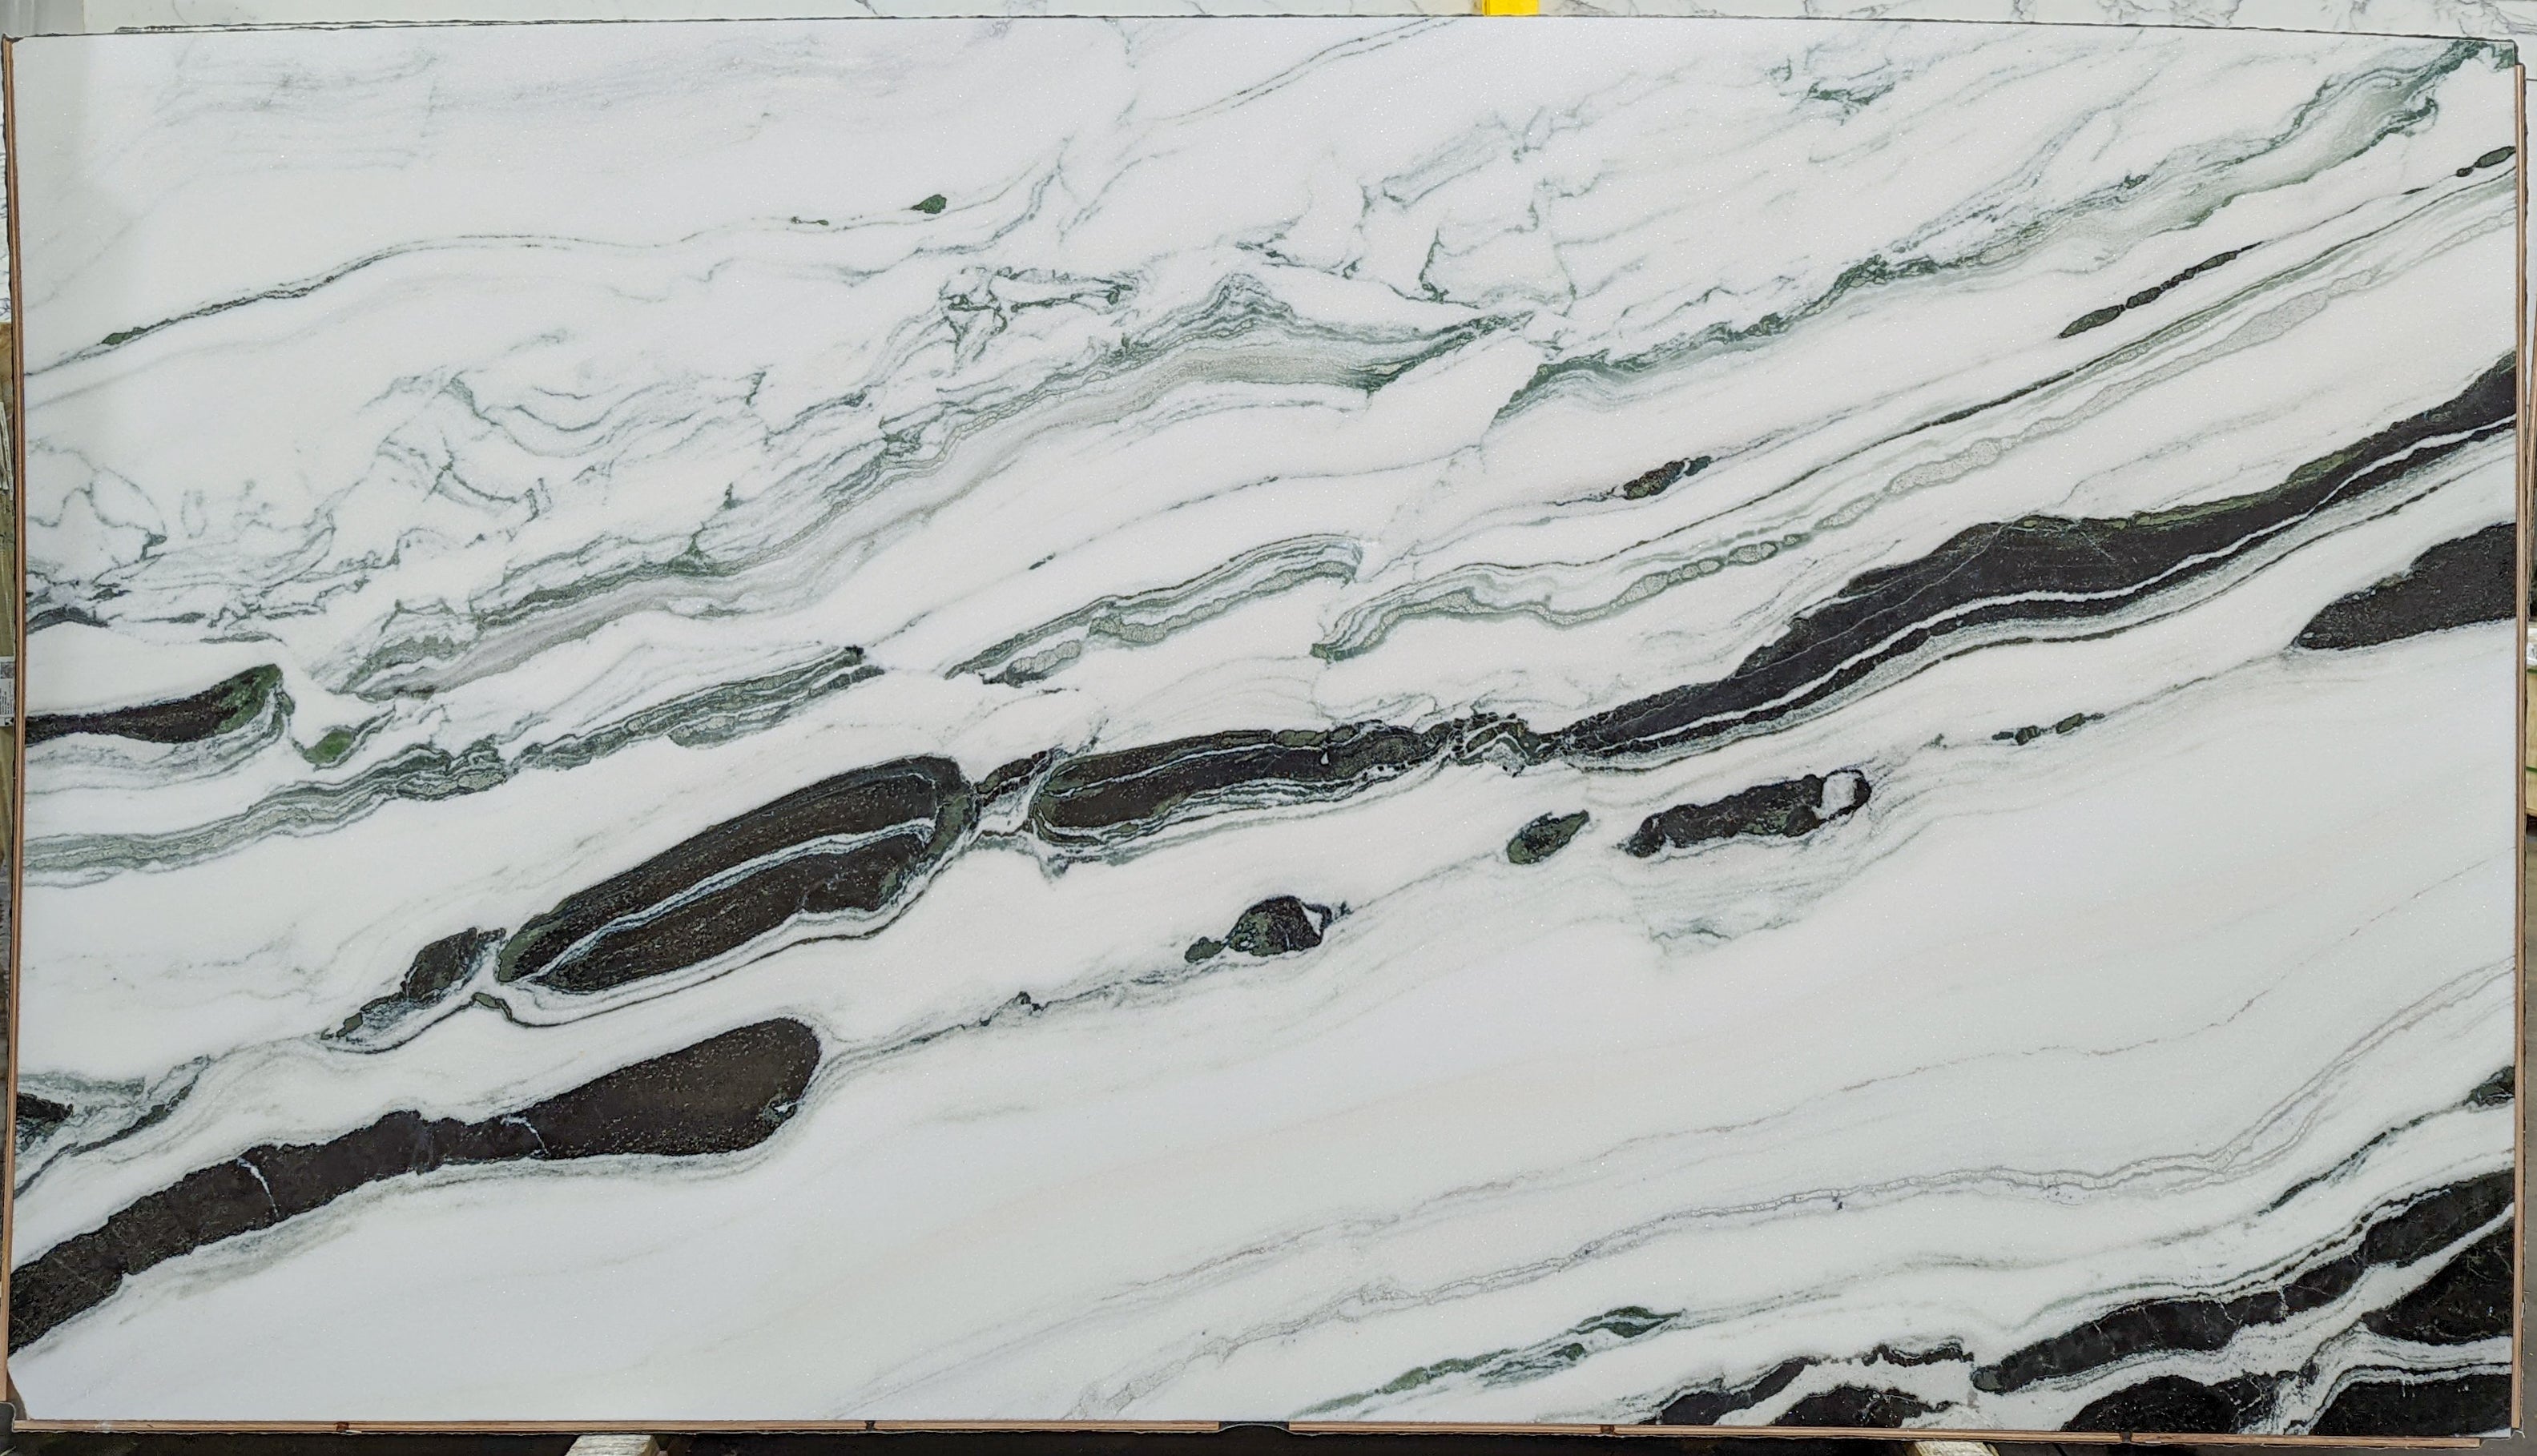  Panda White Marble Slab 3/4  Polished Stone - P40721#19 -  65x118 